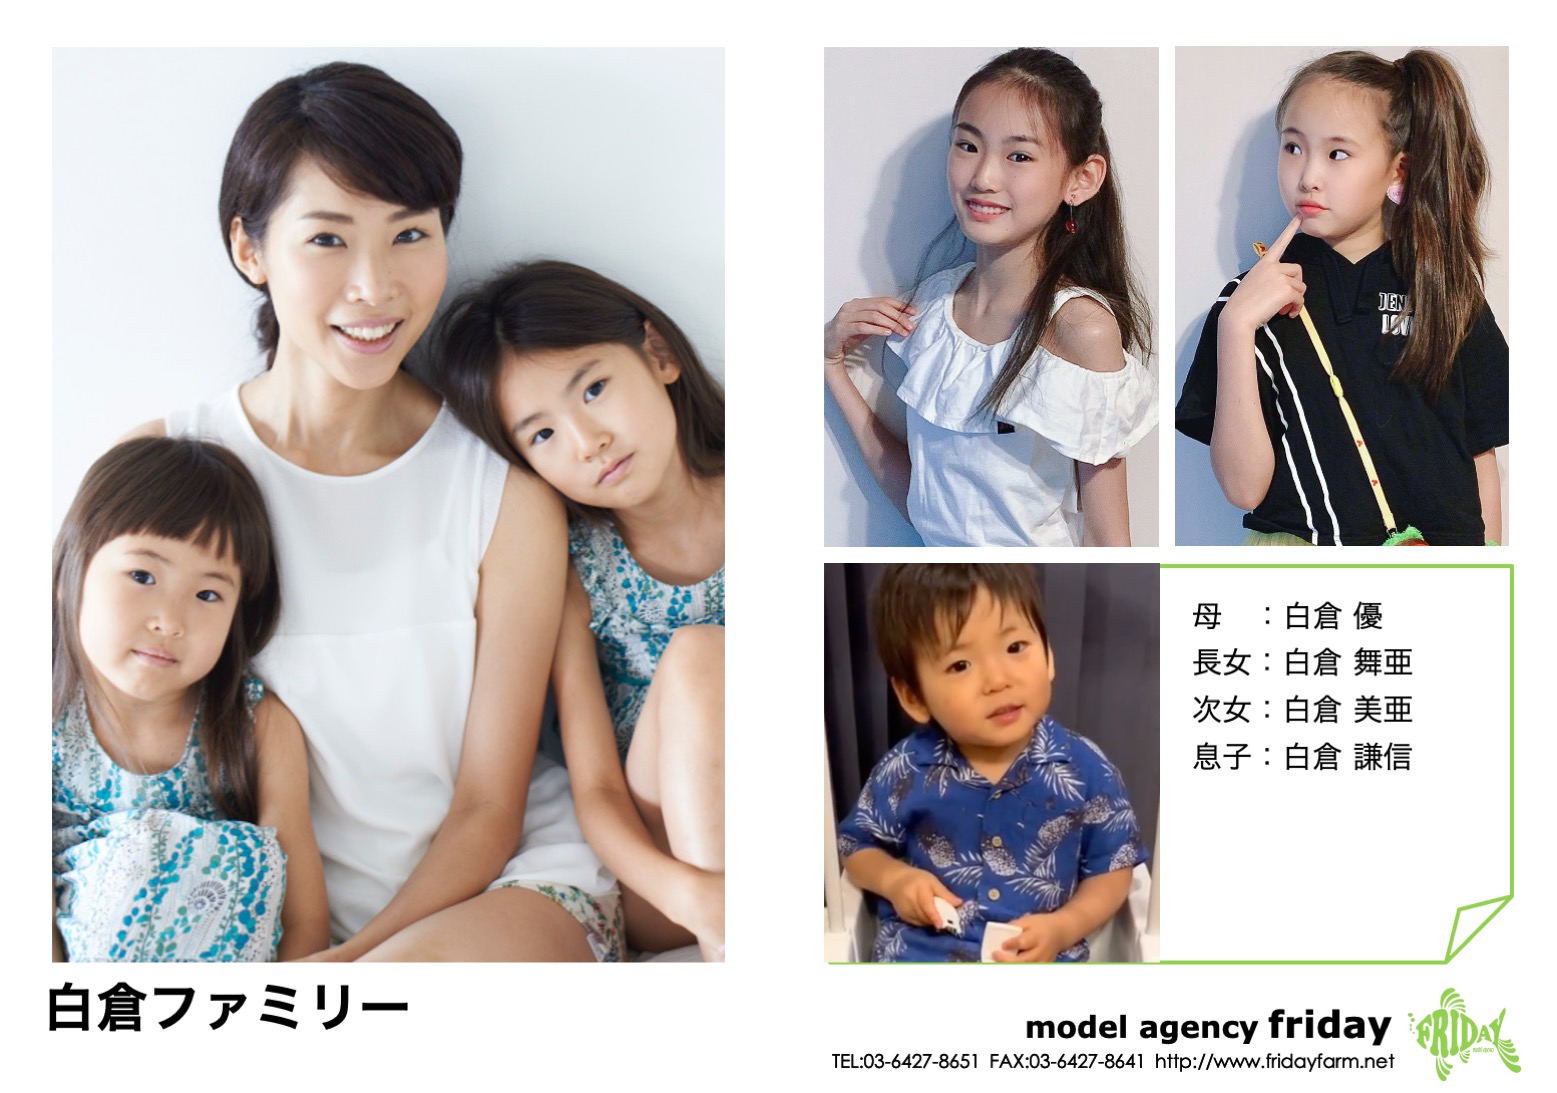 白倉ファミリー - Shirakura Family | model agency friday